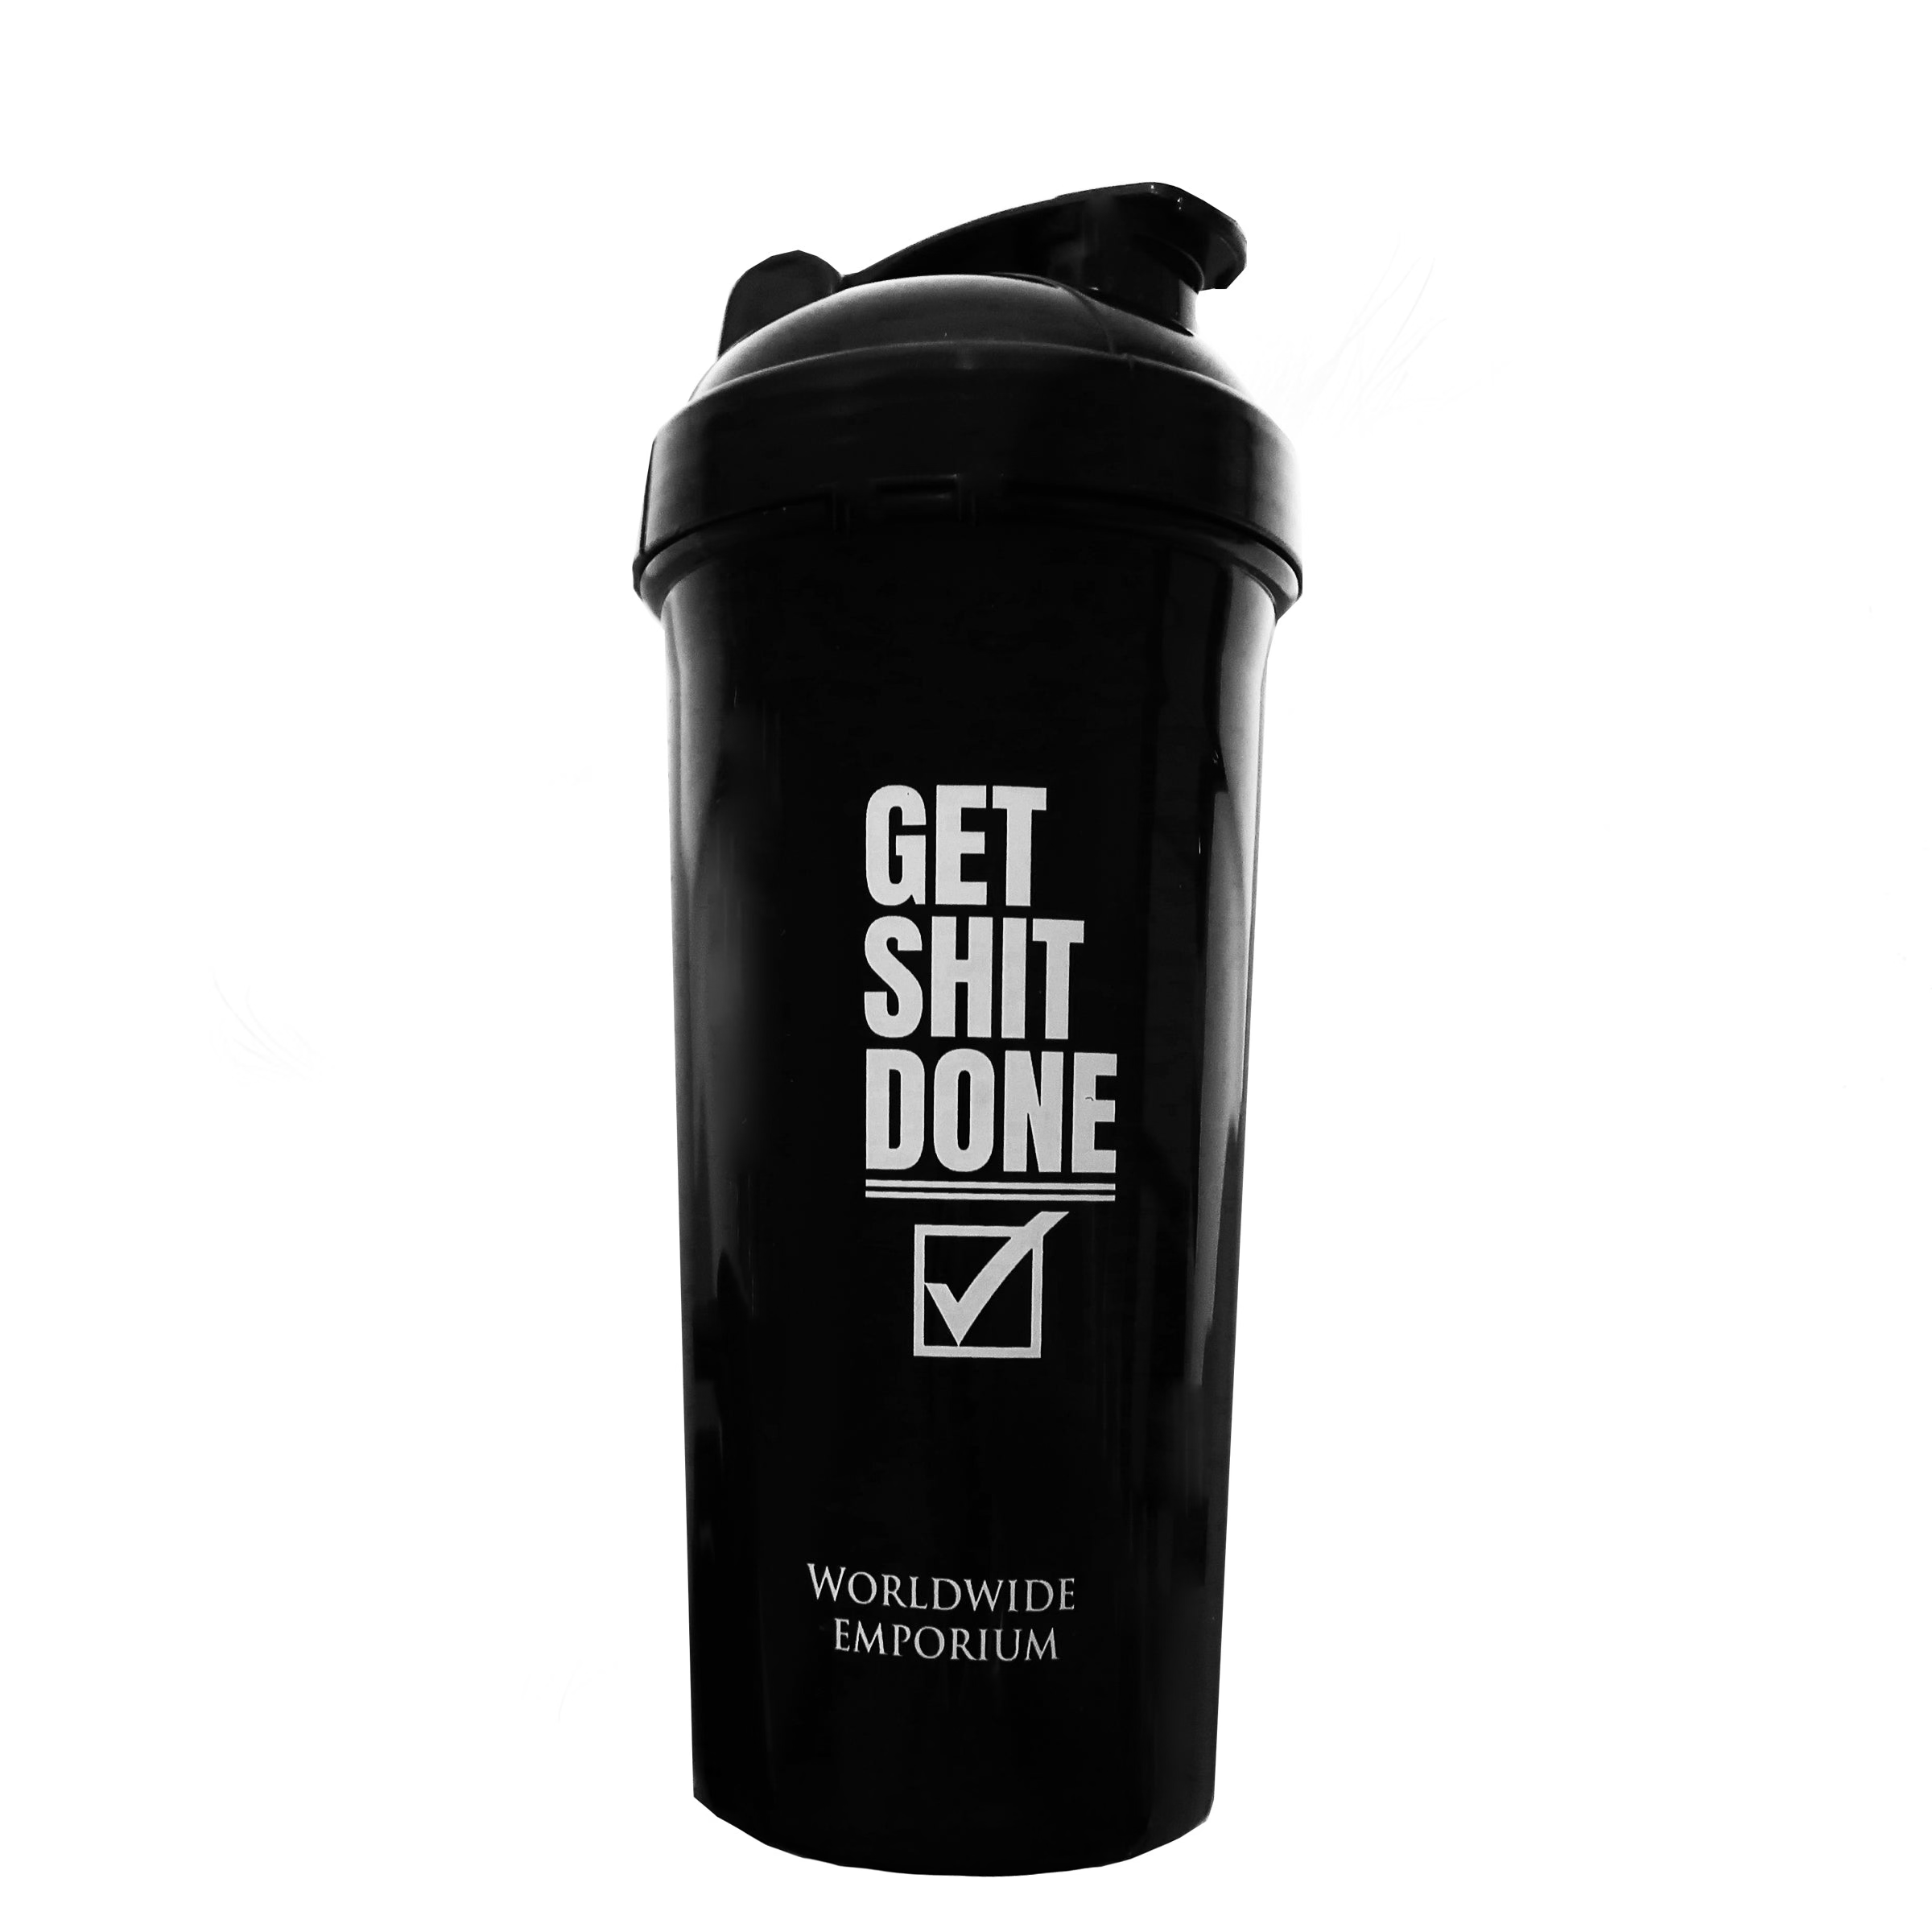 Worldwide Emporium Protein Shaker - Get shit done